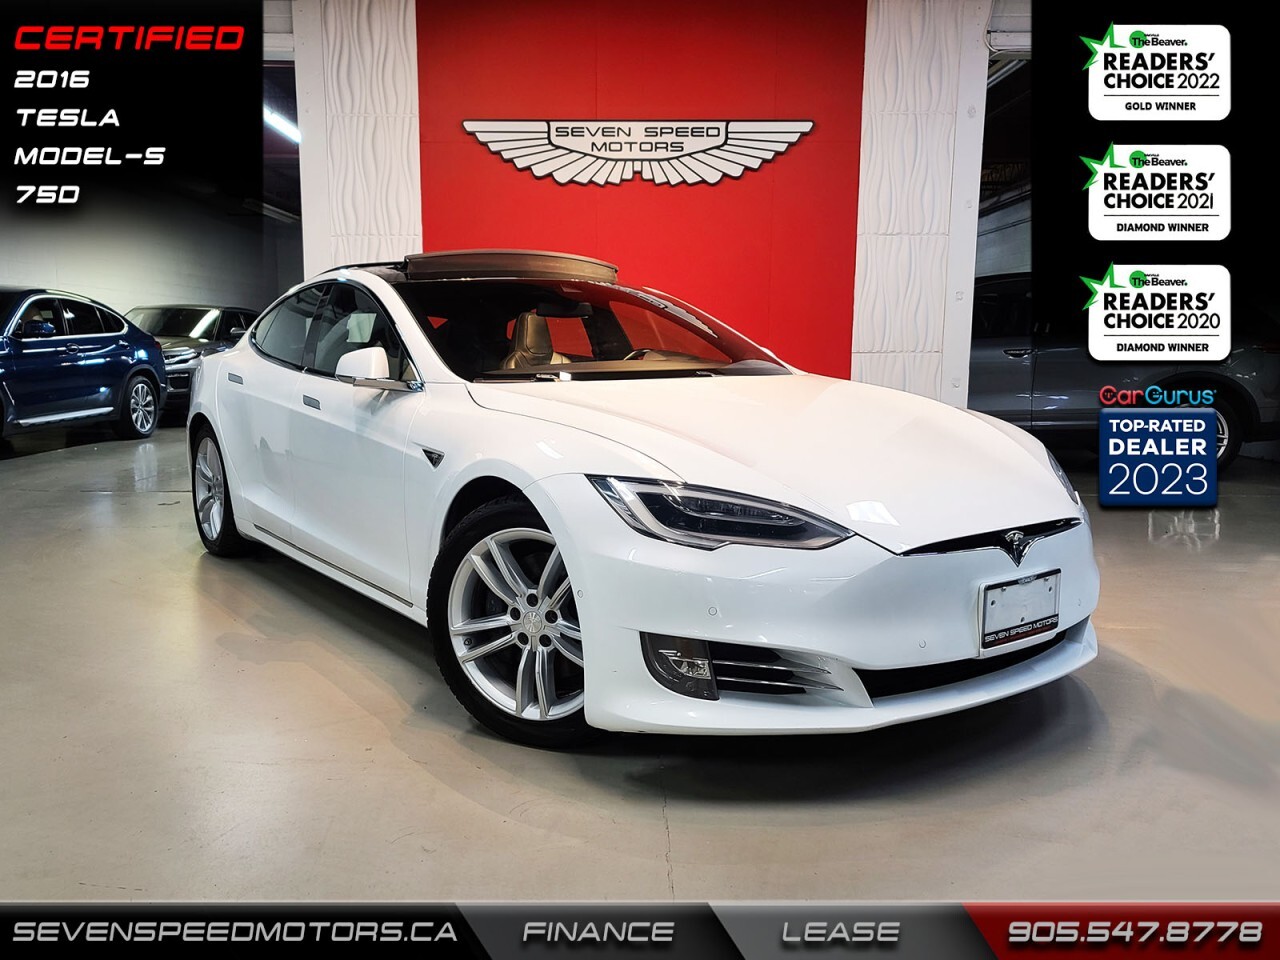 2016 Tesla Model S 75D/Premium/Certified/Finance